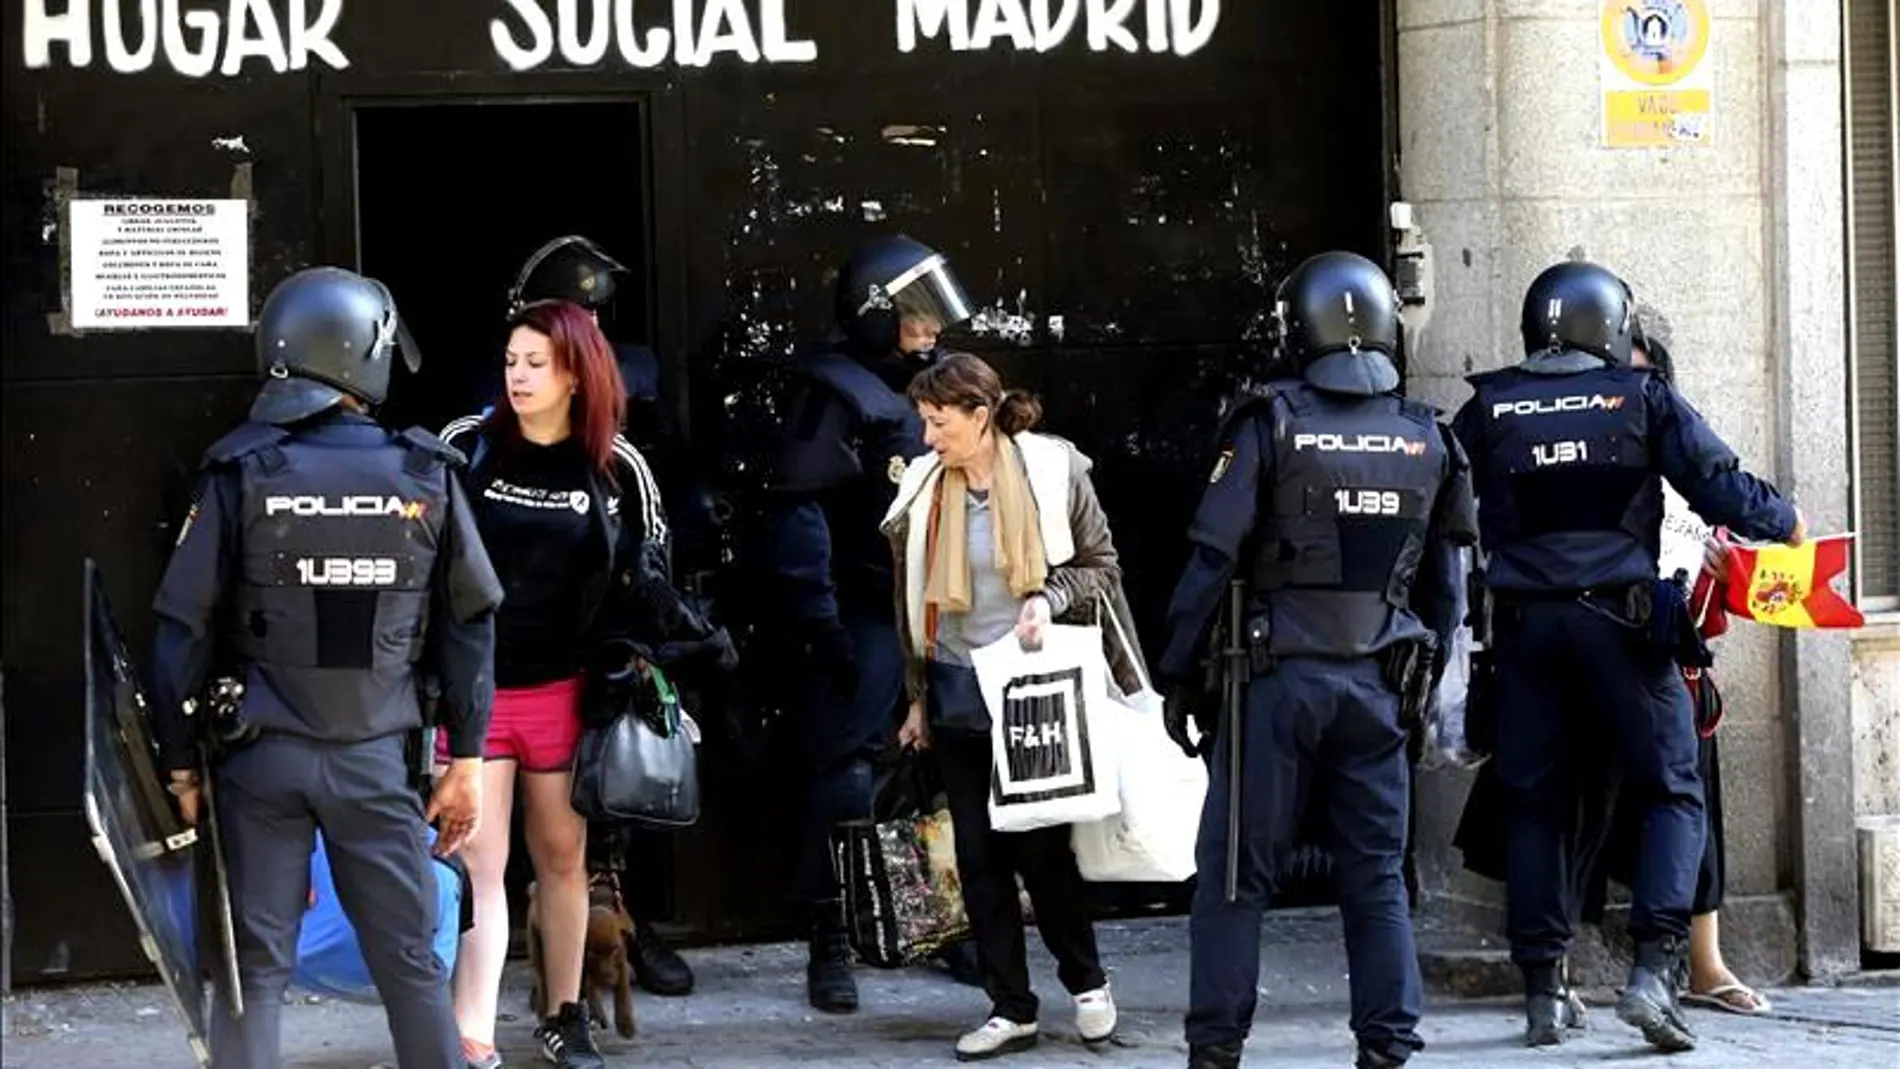 La Policía desaloja un centro ocupado de ideología neonazi en Madrid